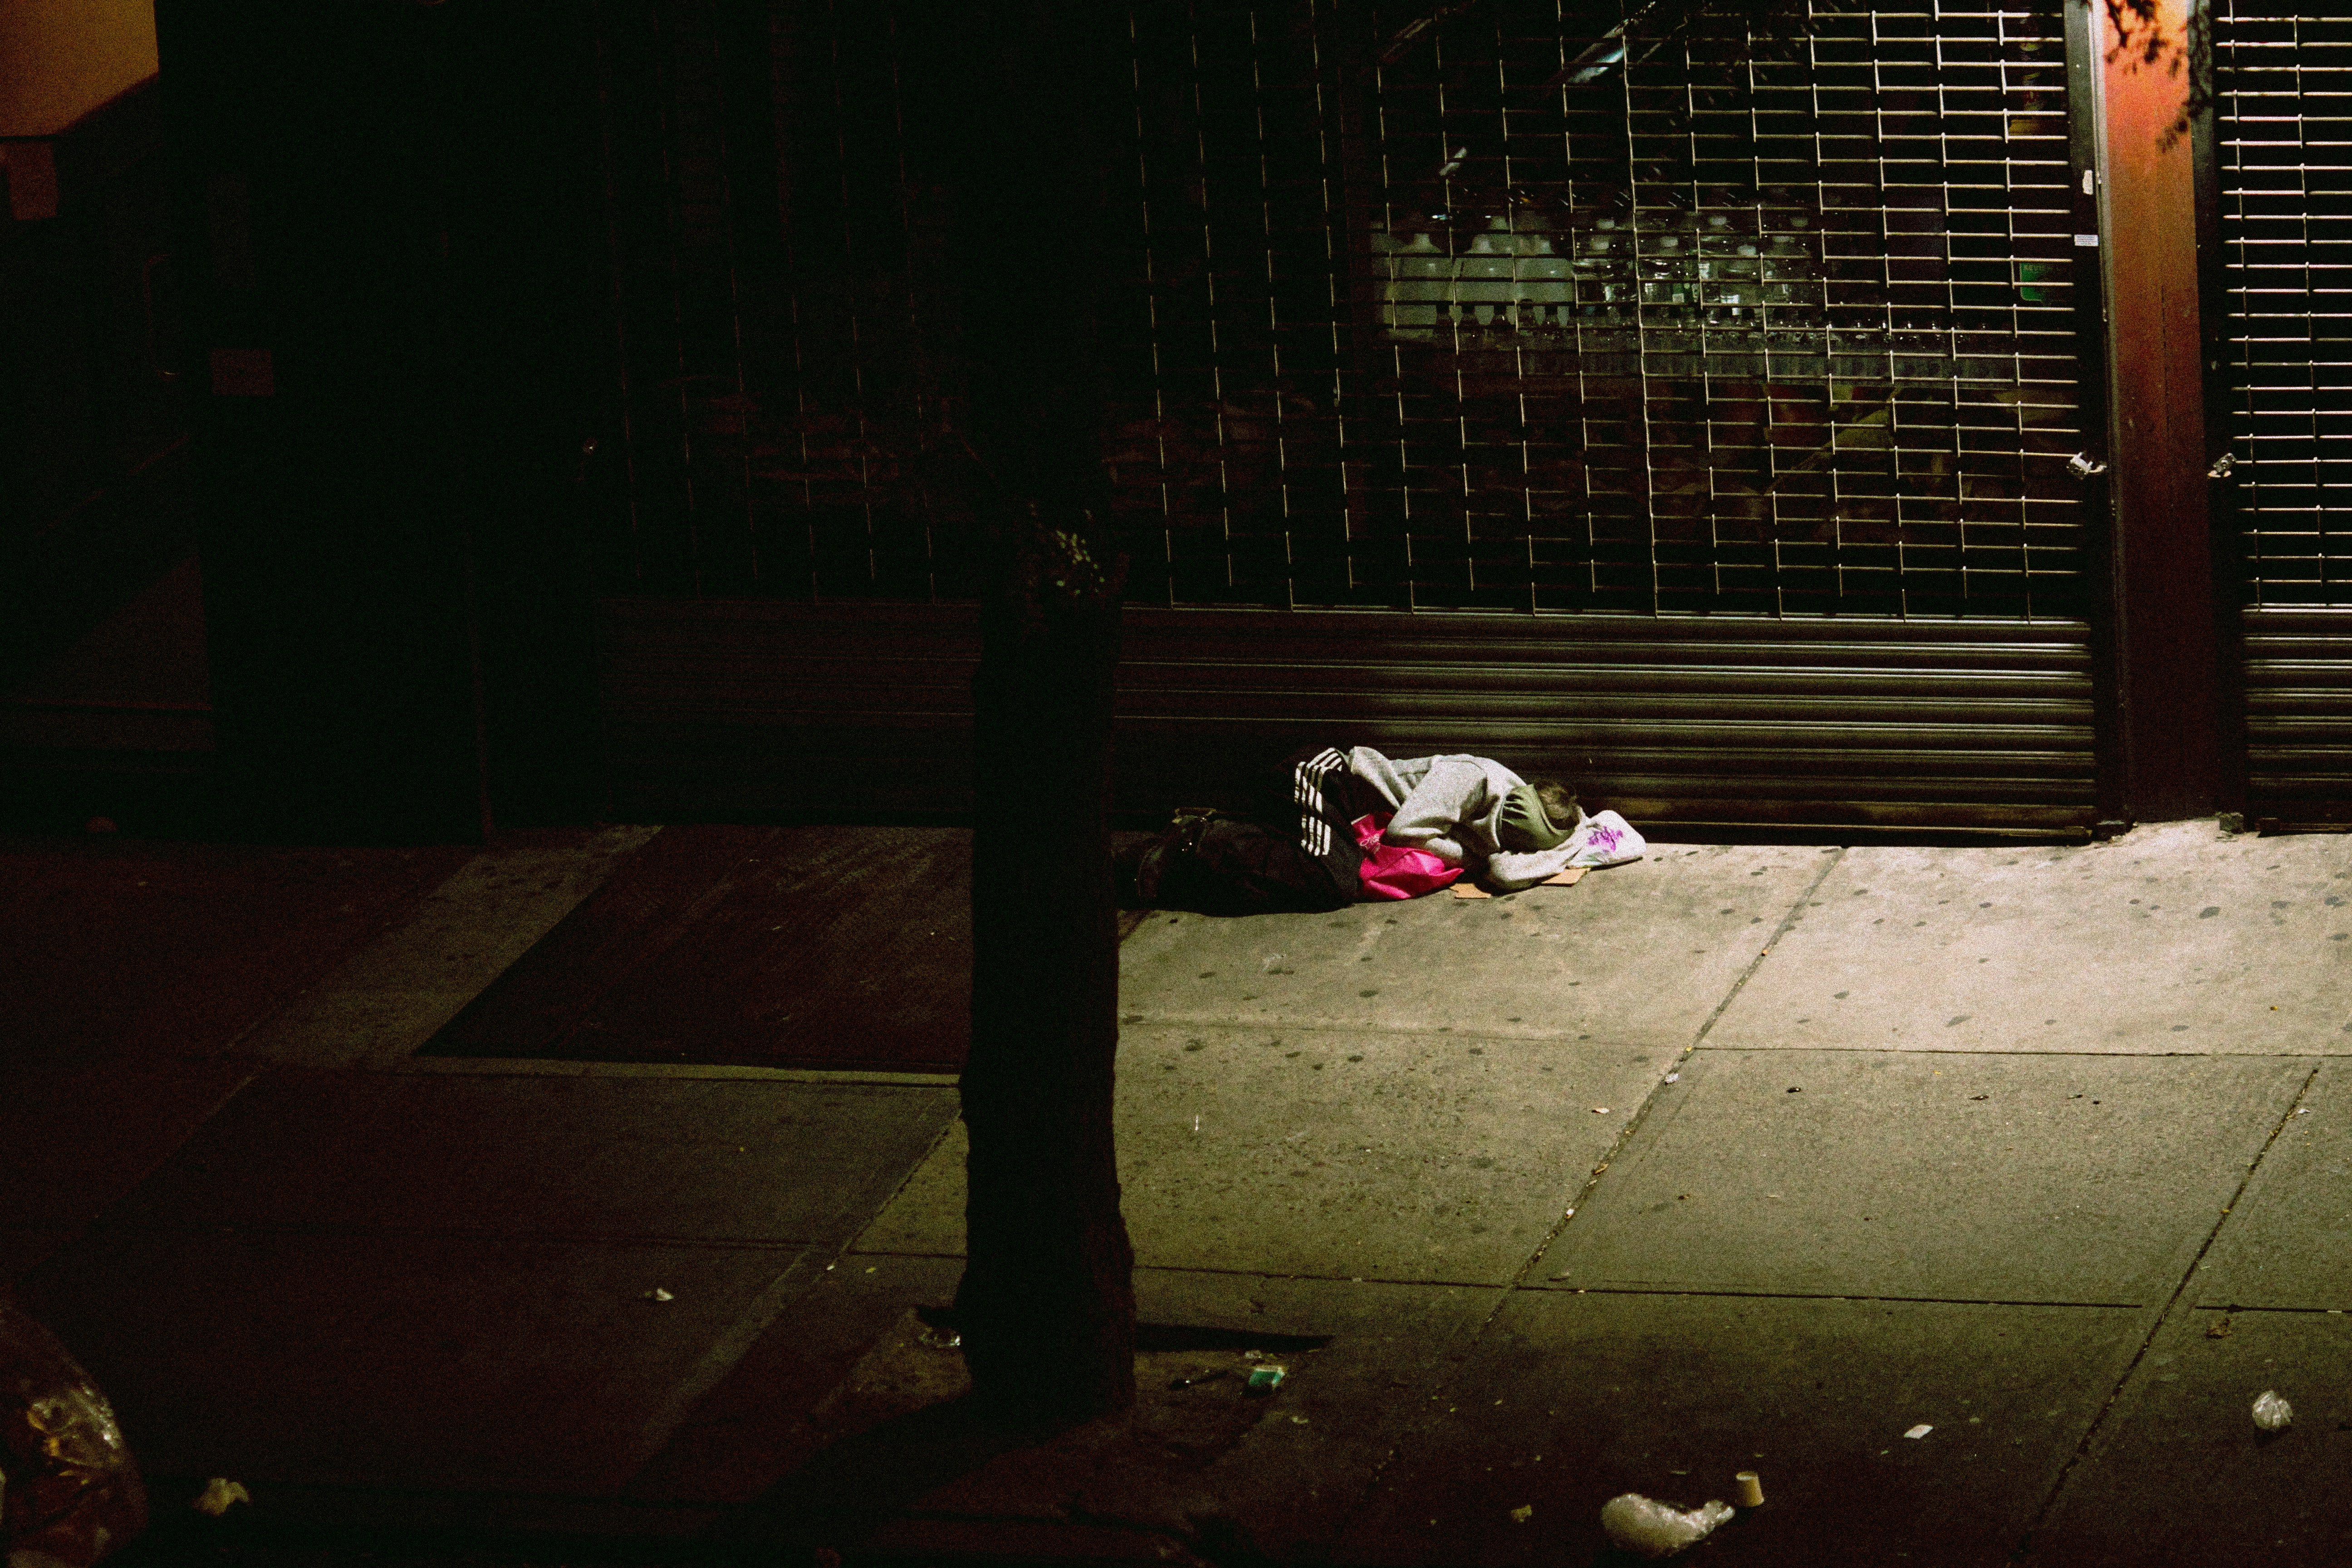 Una persona duerme en el suelo, envuelta en cobijas. | Foto: Unsplash